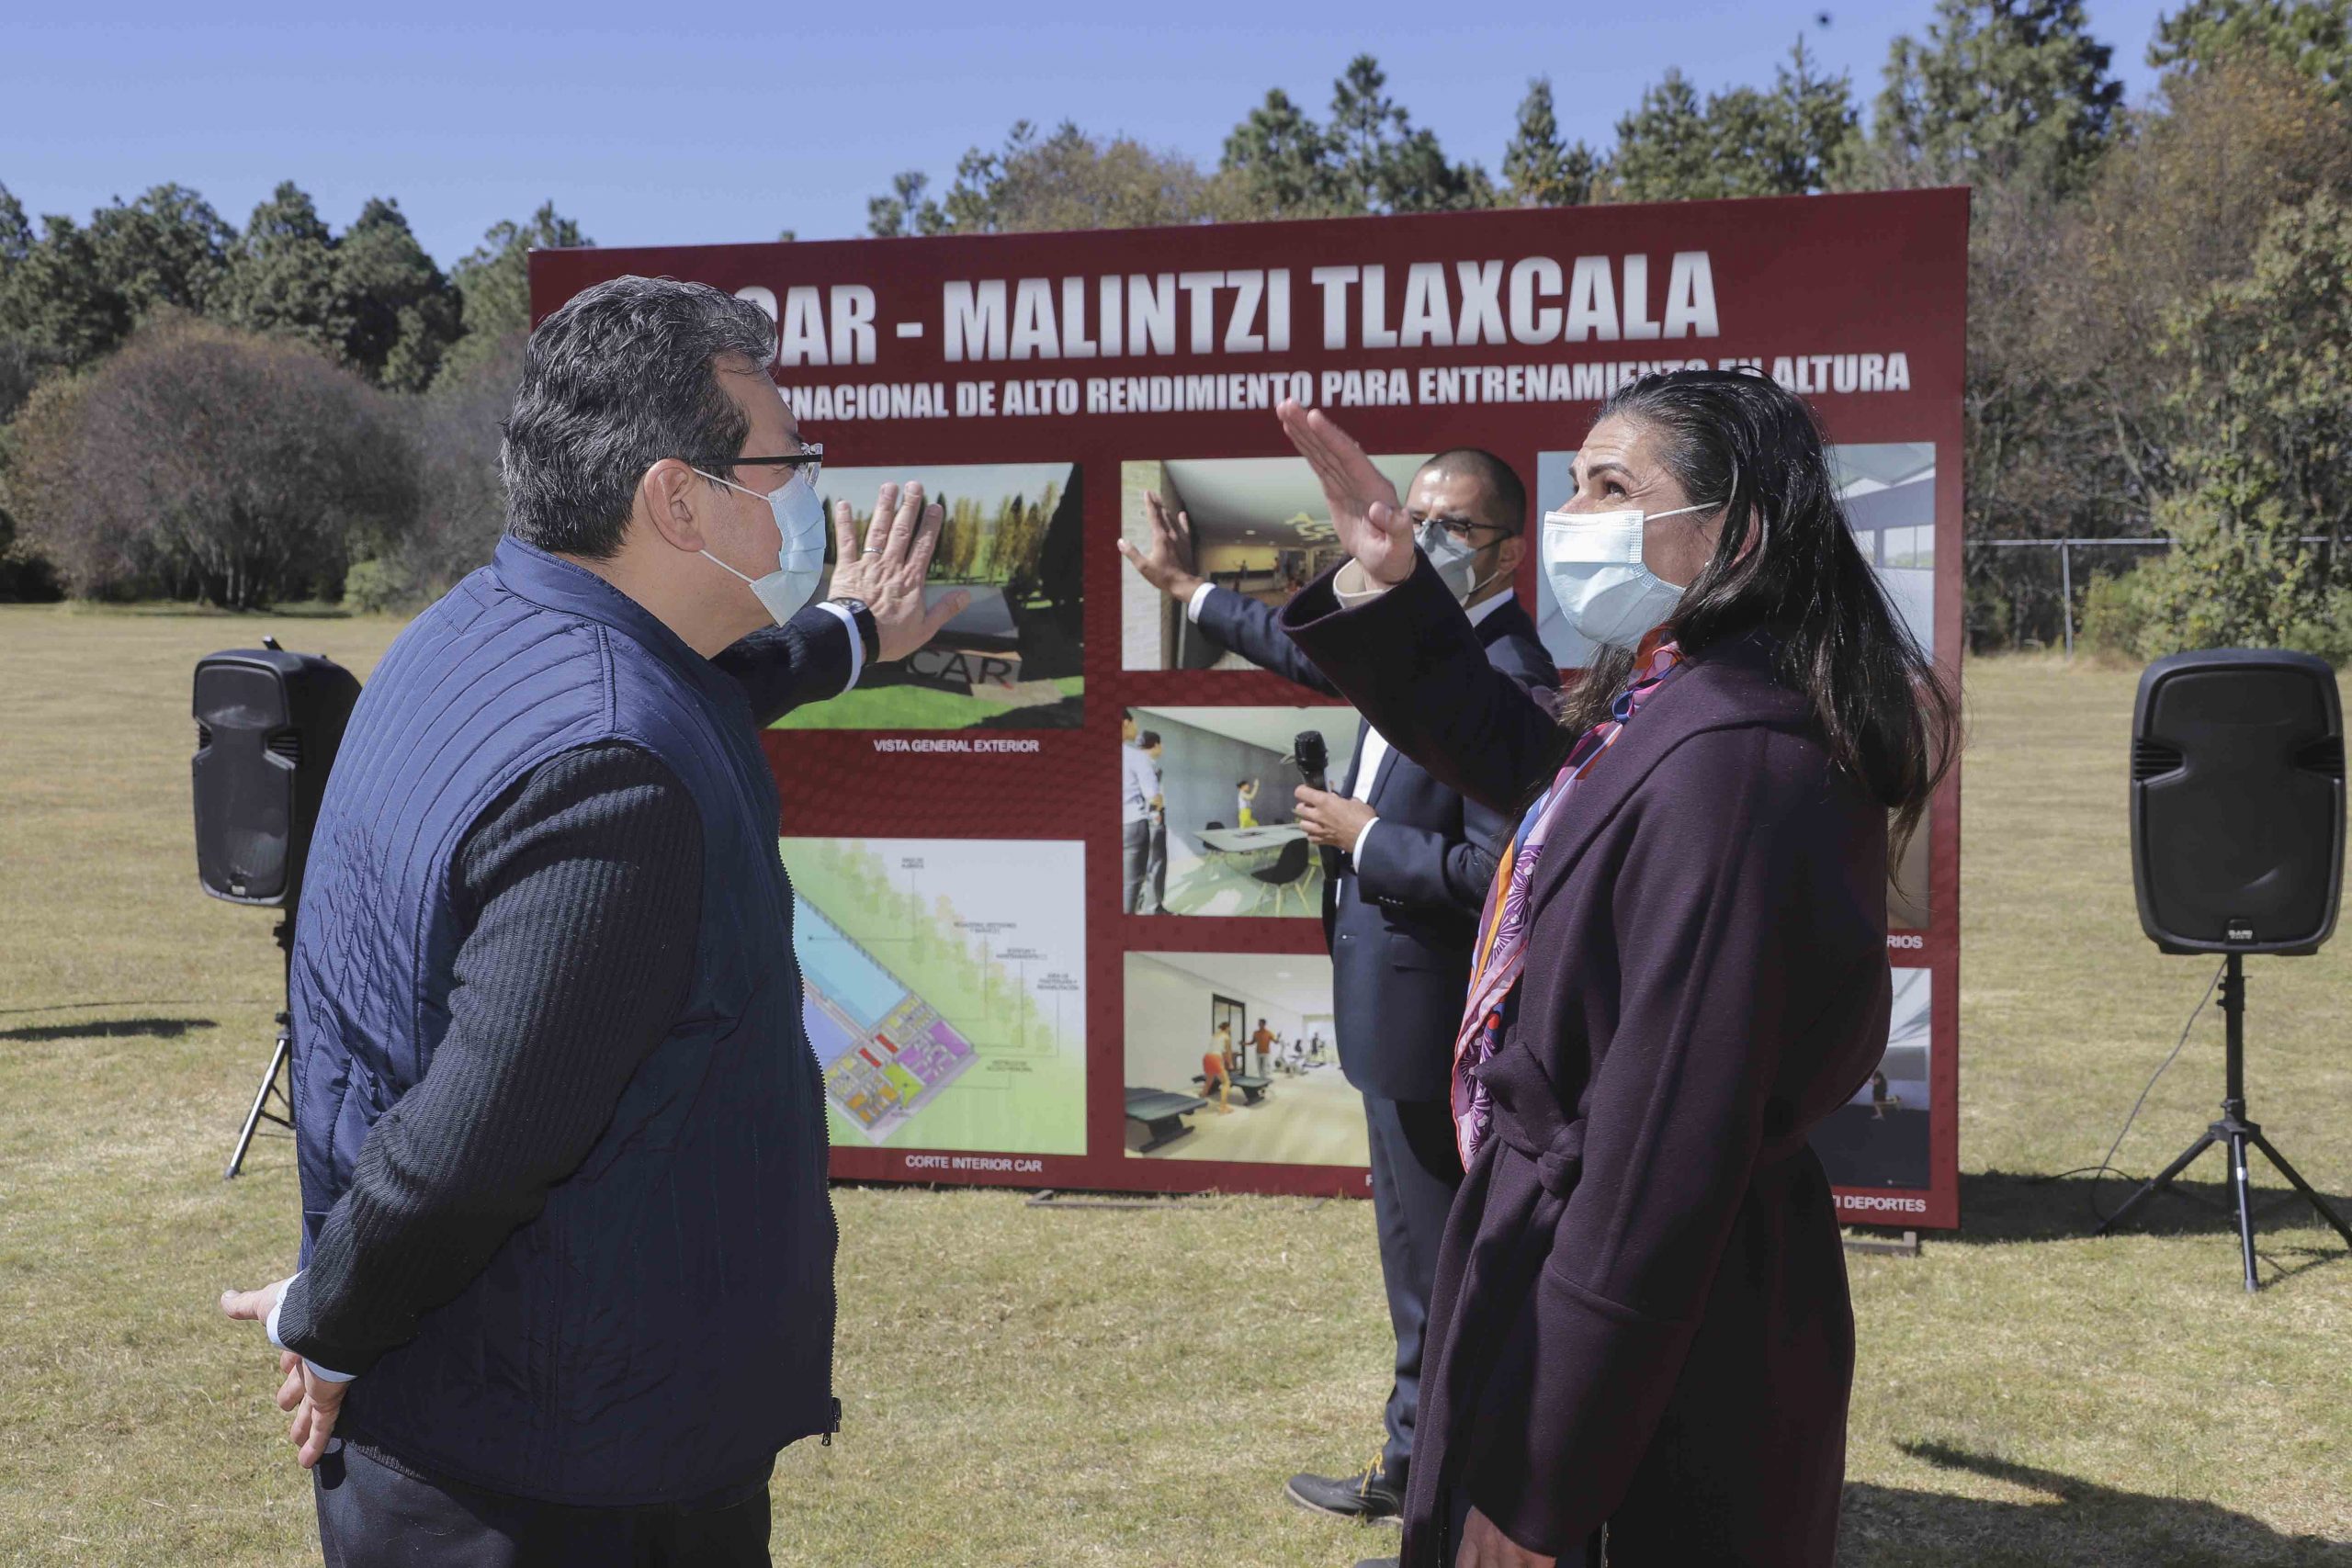 Marco Mena, IMSS y CONADE acuerdan creación del Centro Internacional de Entrenamiento de altura “La Malintzi”